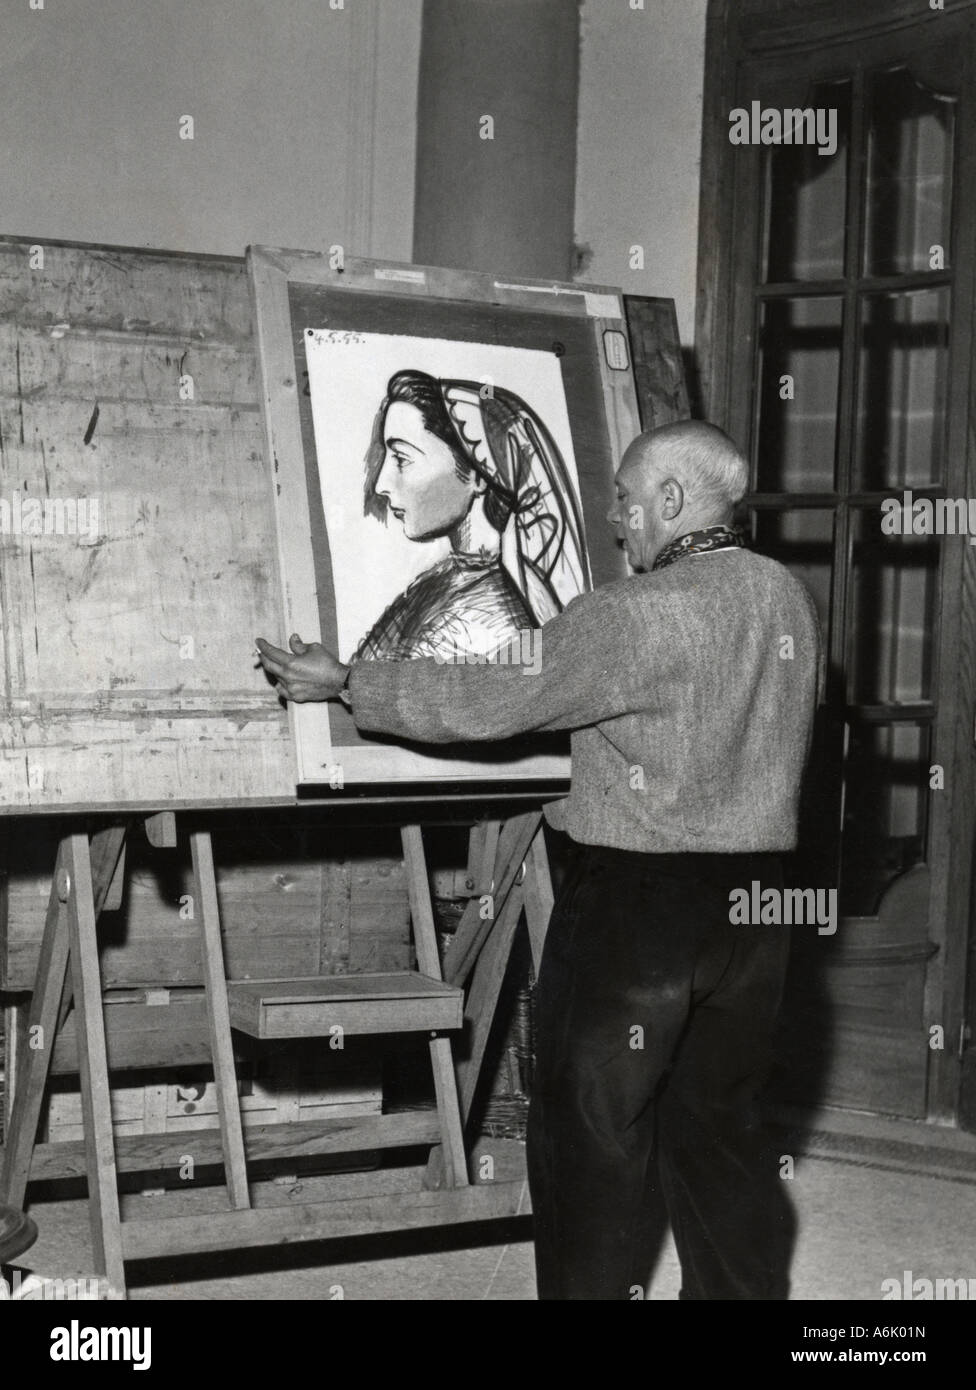 L'artiste espagnol PABLO PICASSO à sa villa de Cannes avec un portrait de sa compagne Louise datée du 4 mai 1955 Banque D'Images